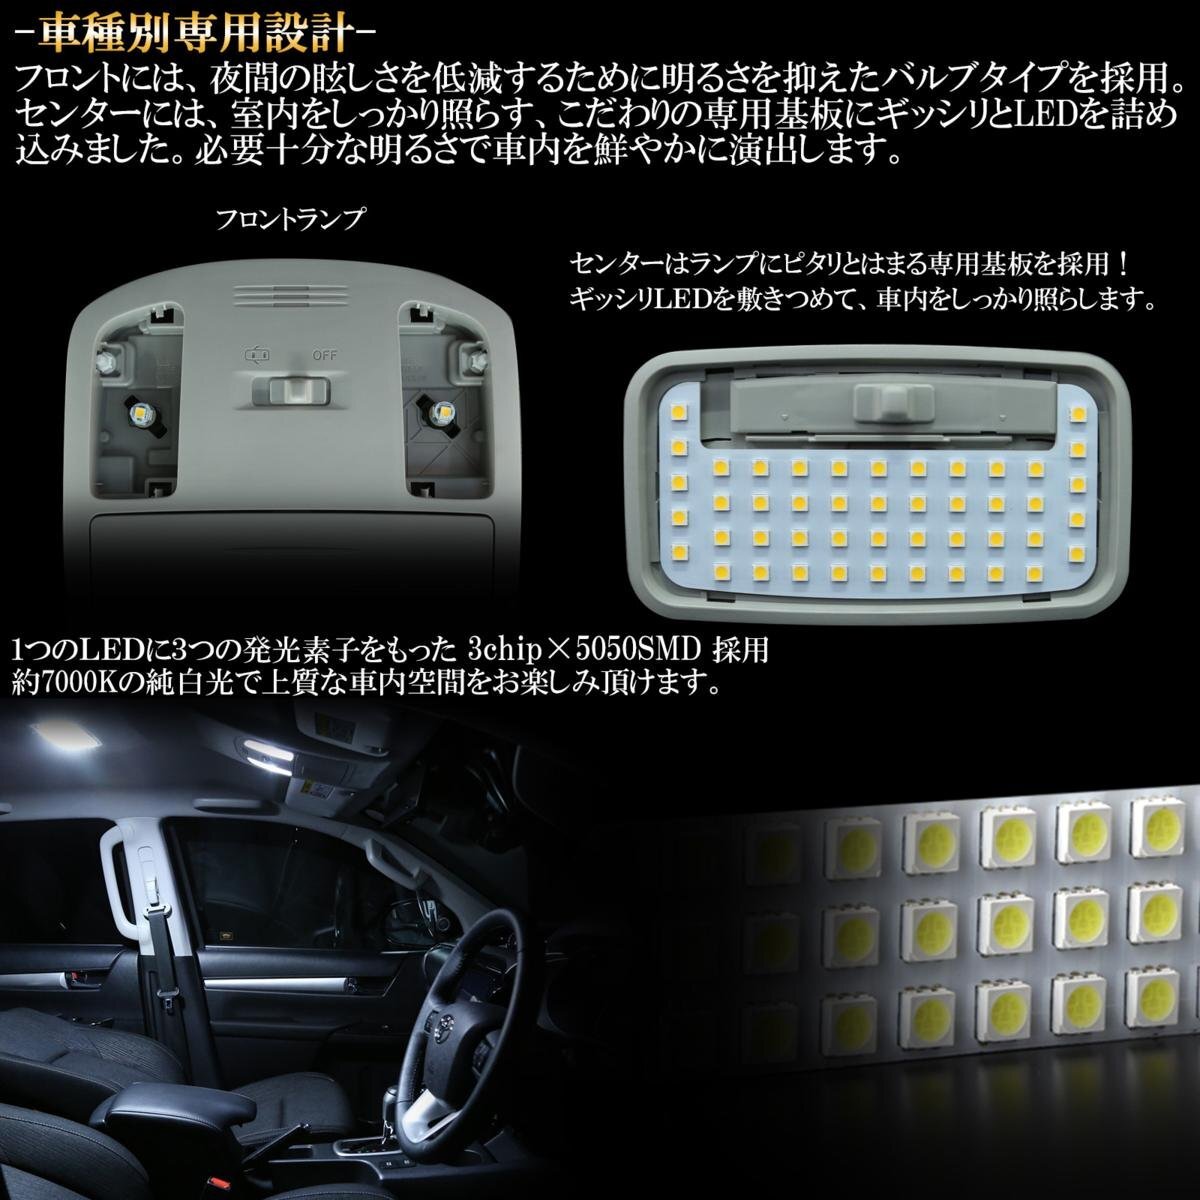 トヨタ GUN125 ハイラックス ピックアップ 専用設計 LED ルームランプ 純白 ホワイト 7000K 高輝度3chip×5050SMD R-437_画像2